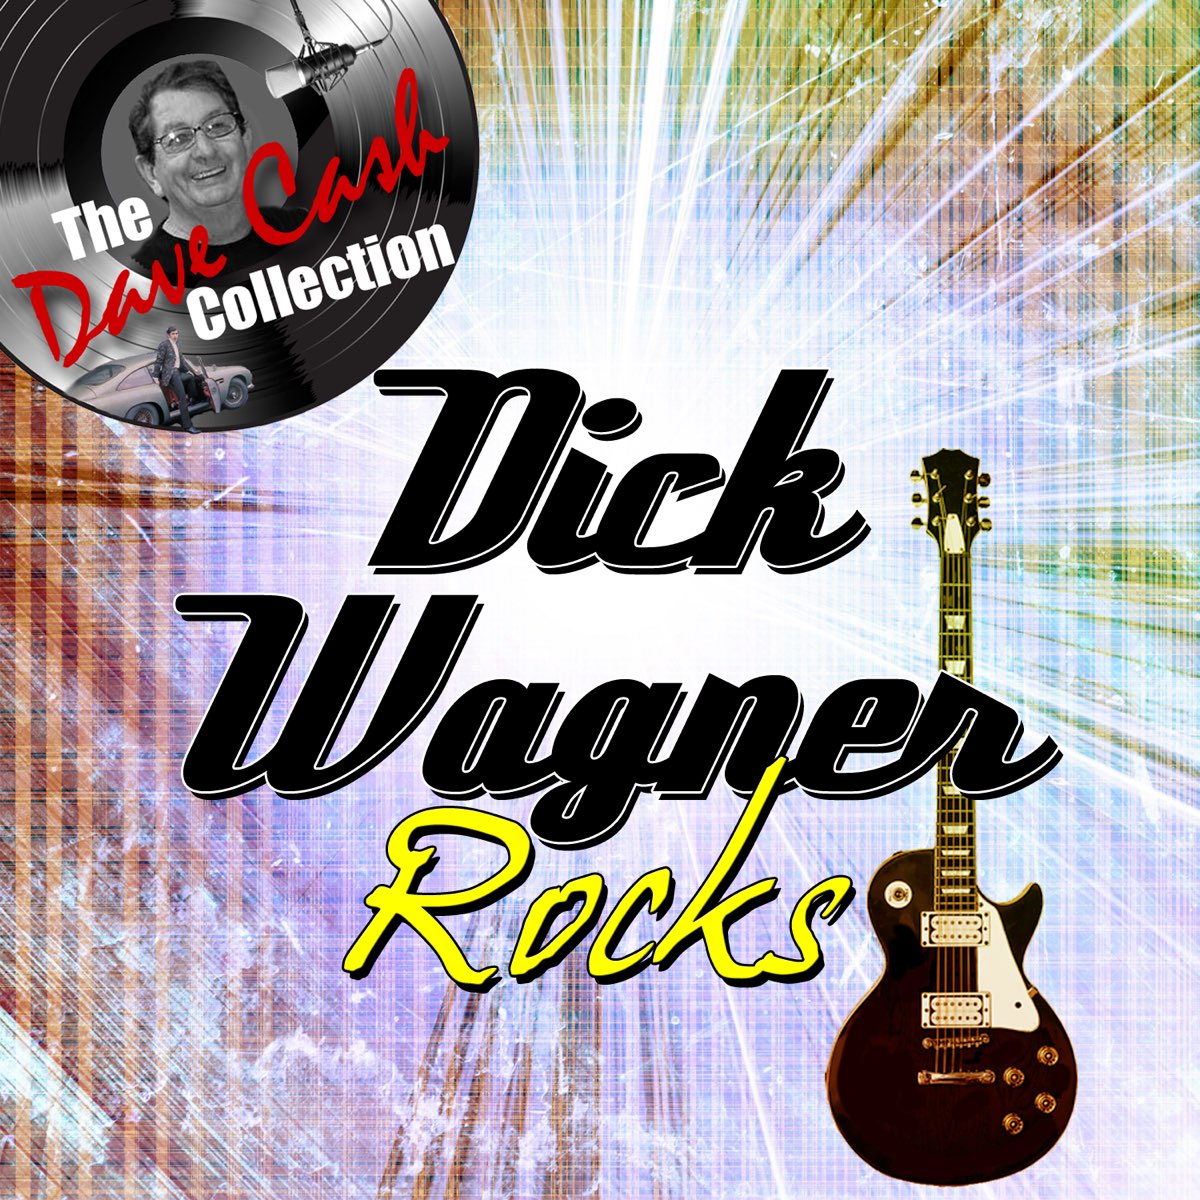 Dick song. Wagner песня. Dick Wagner. Music dick.